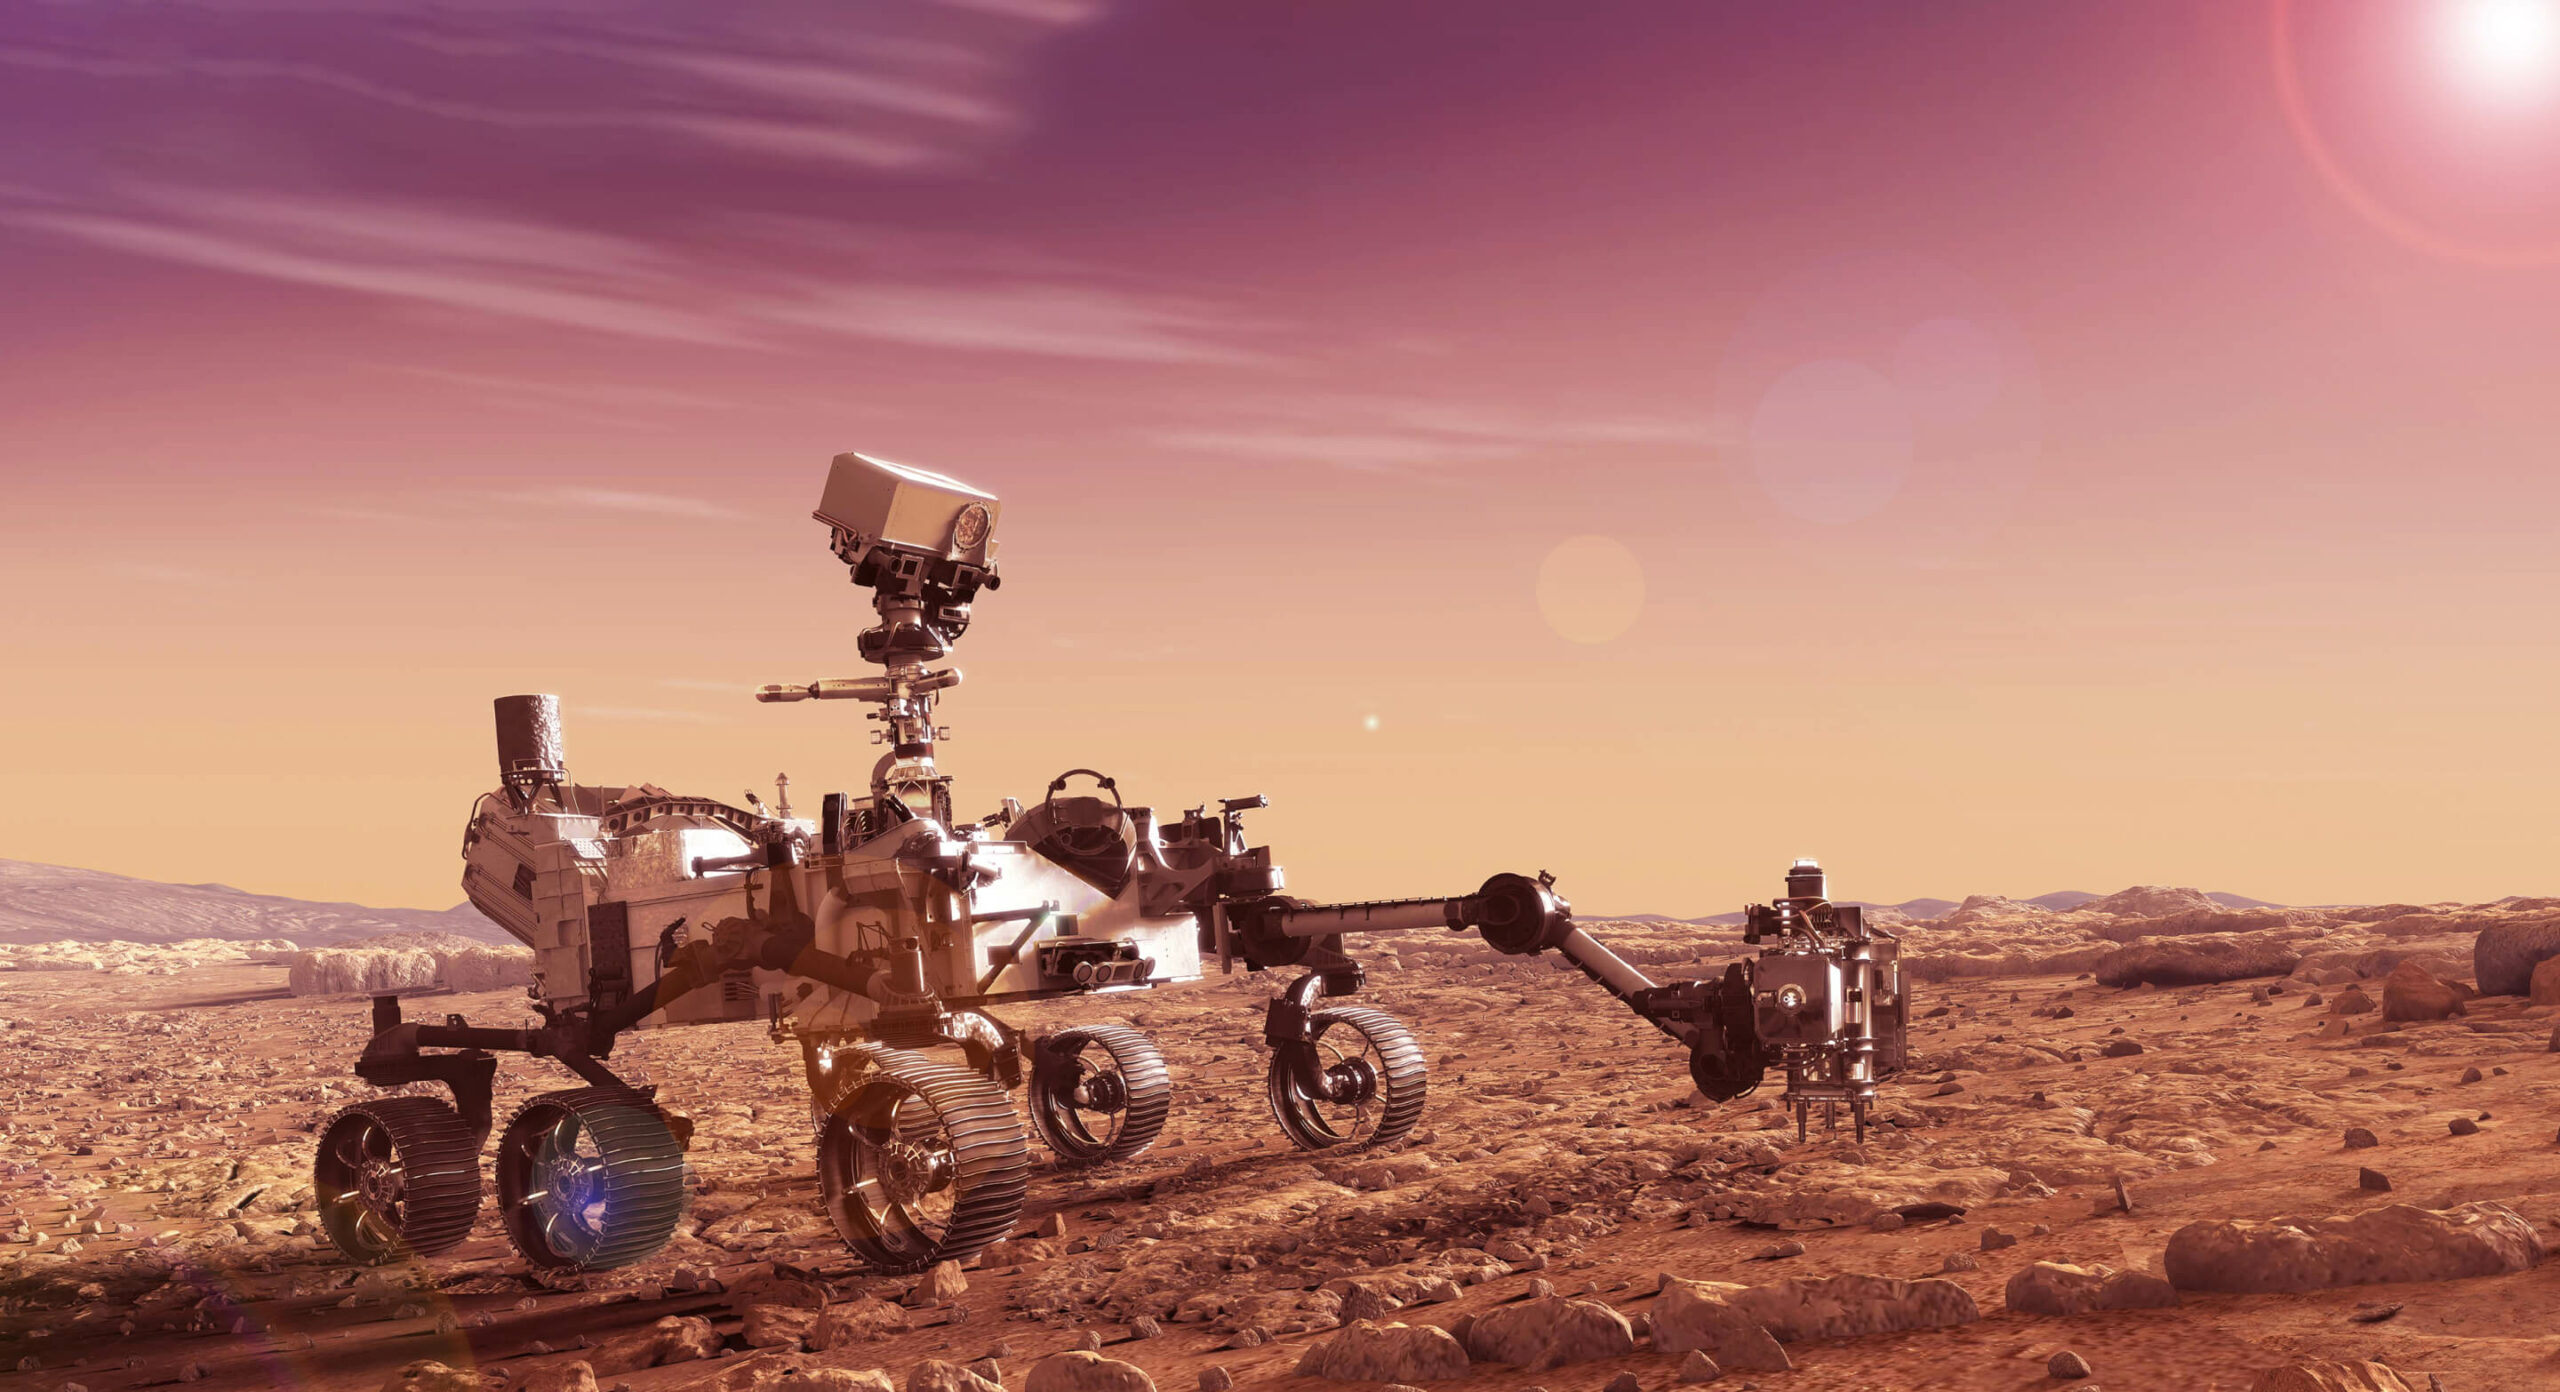 Mars rover testing soil on Mars